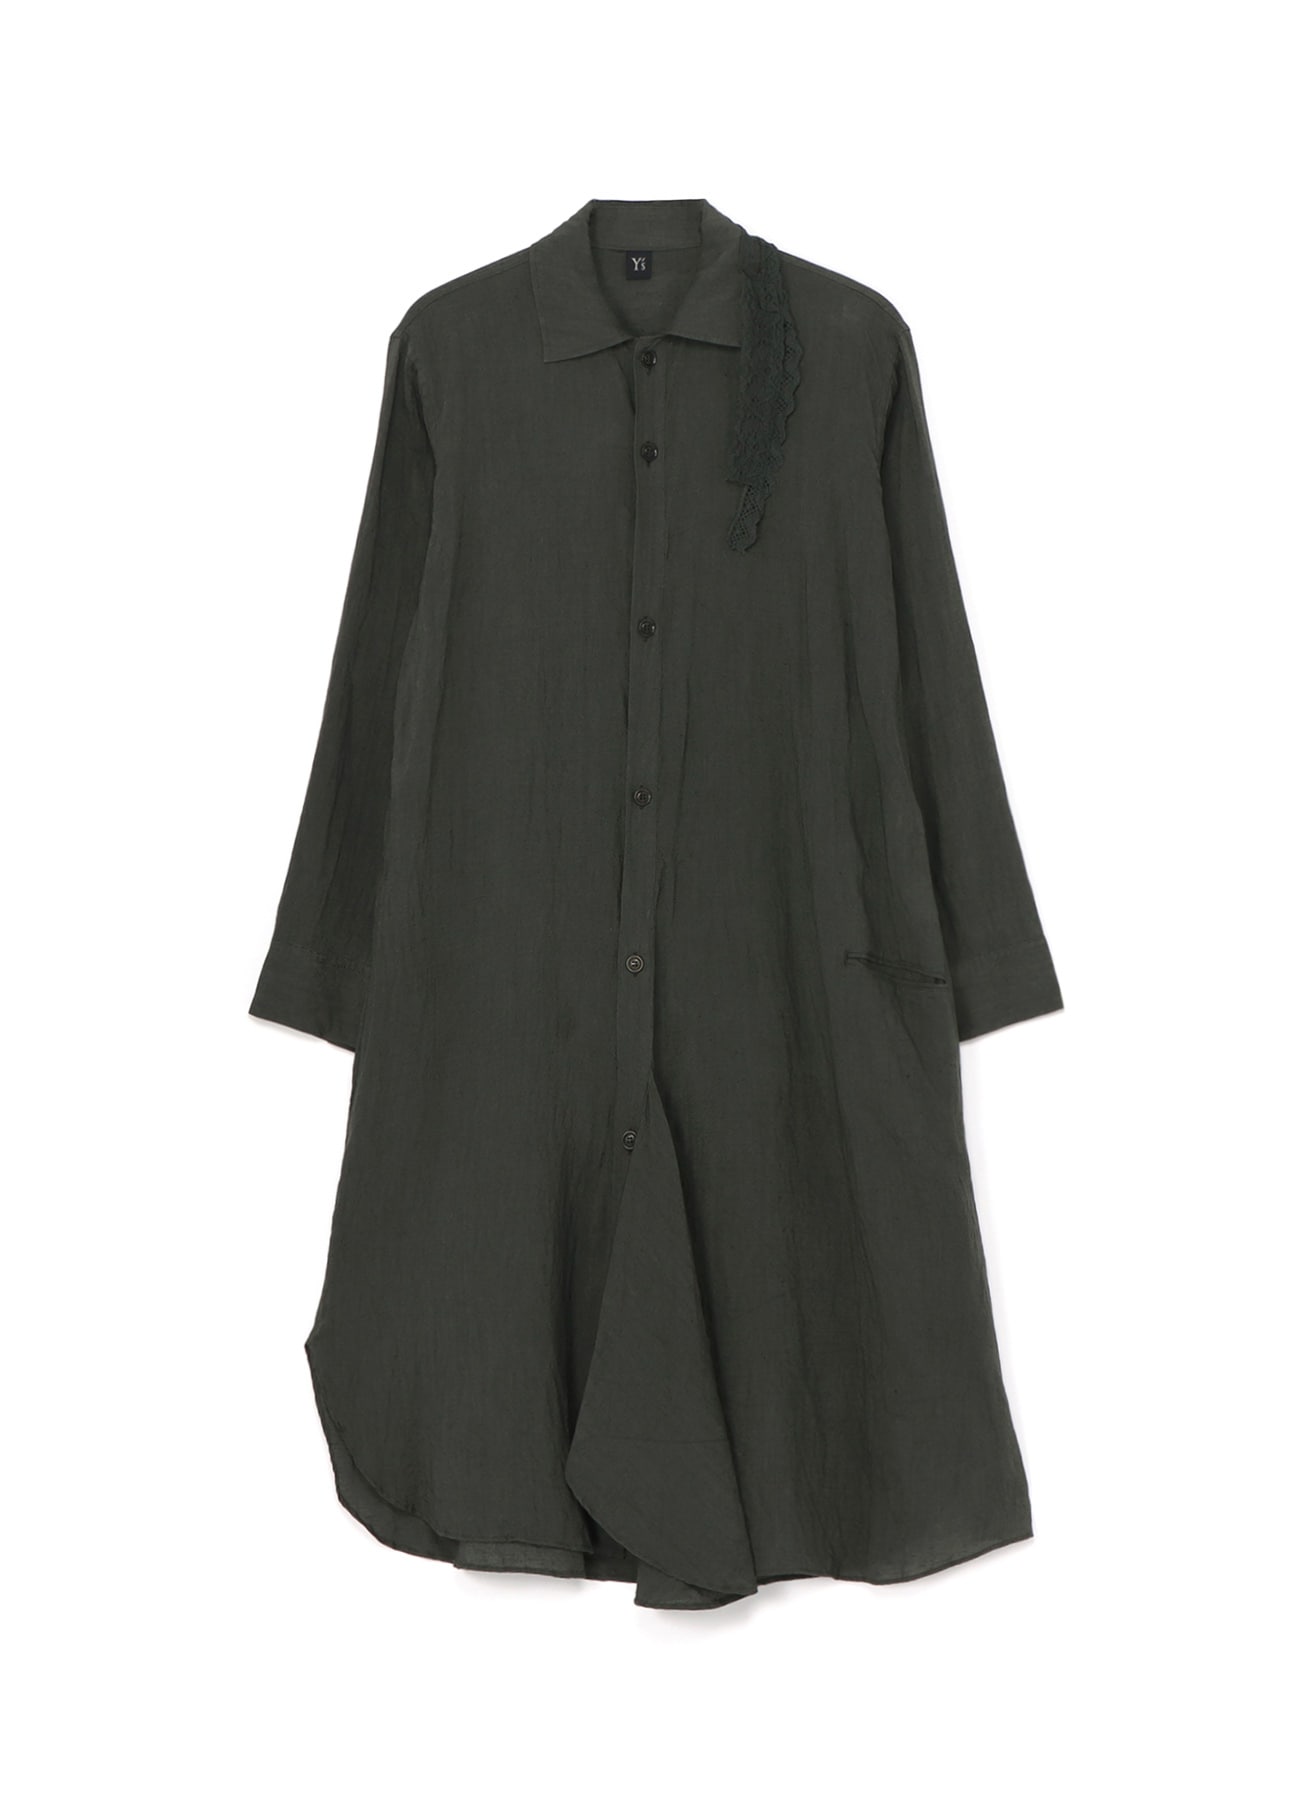 Yohji Yamamoto long-sleeve draped midi shirt dress - Black